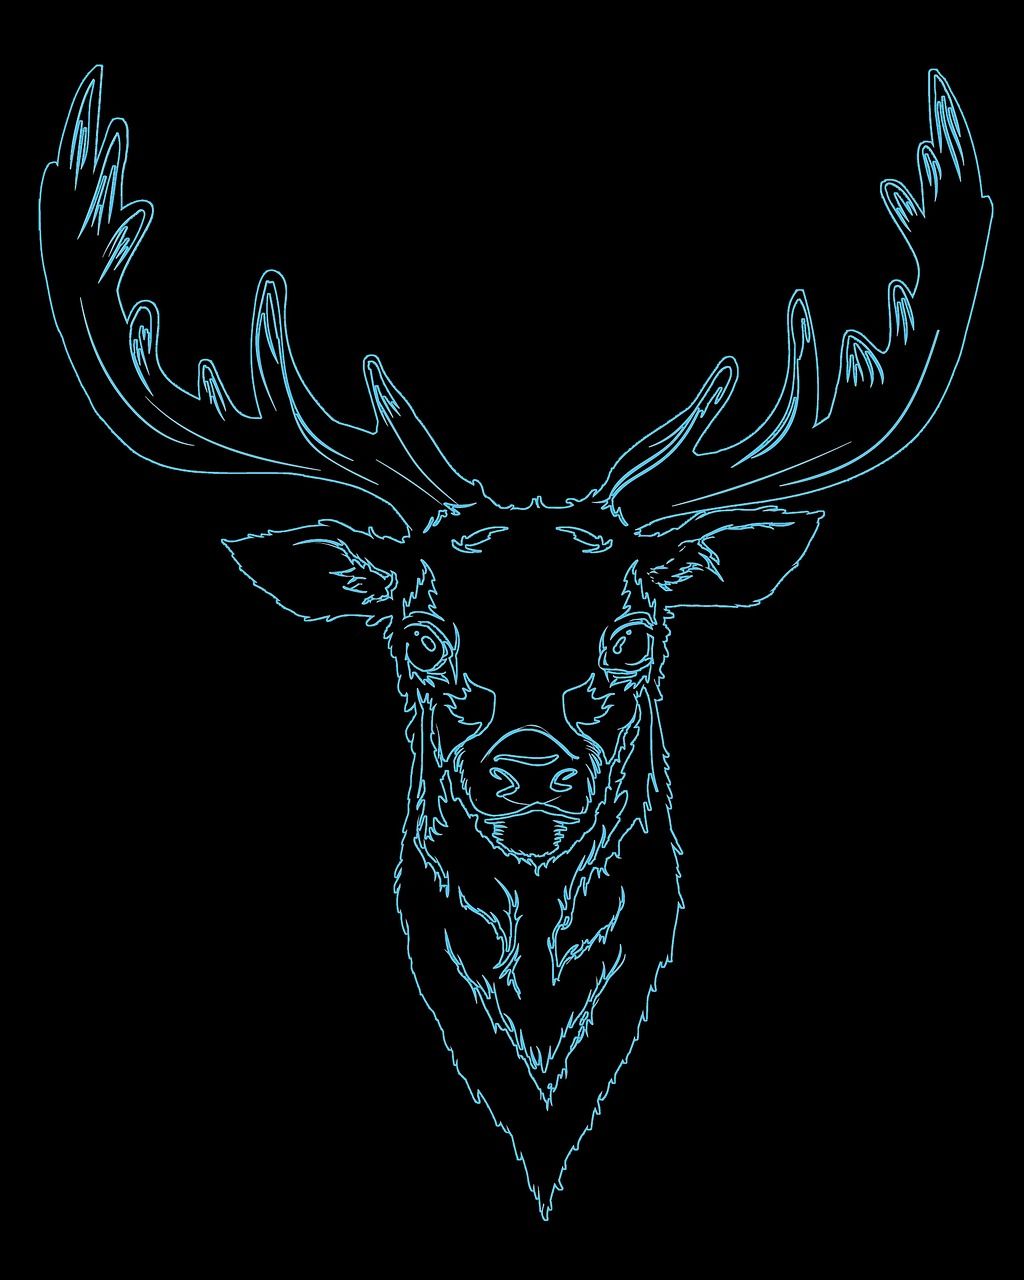 A neon blue deer head on a black background - Deer